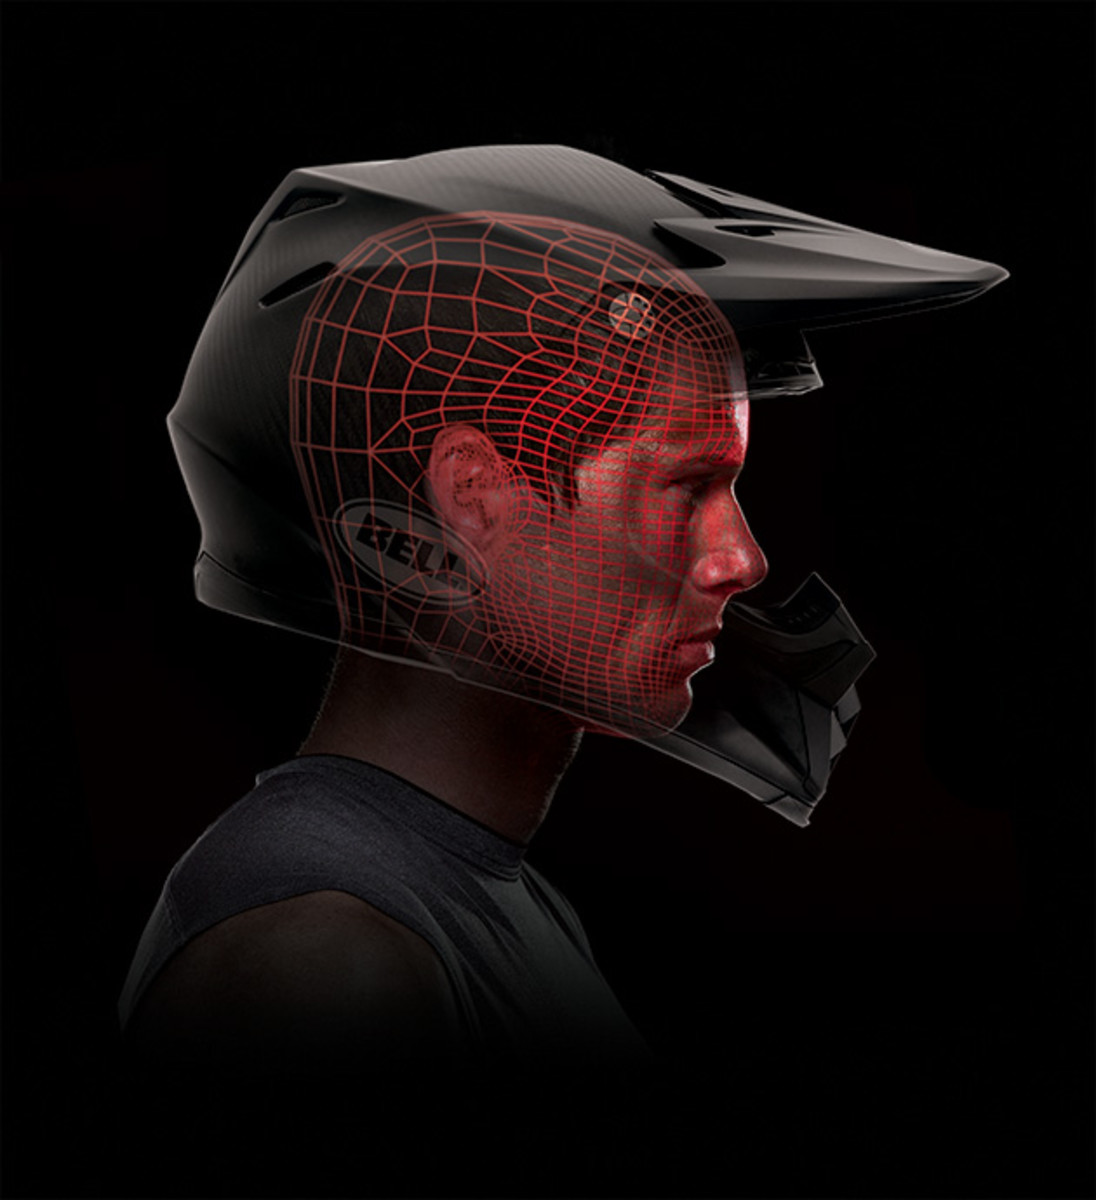 Renderings of the Moto-9 carbon custom-fit helmet designed for Edler.